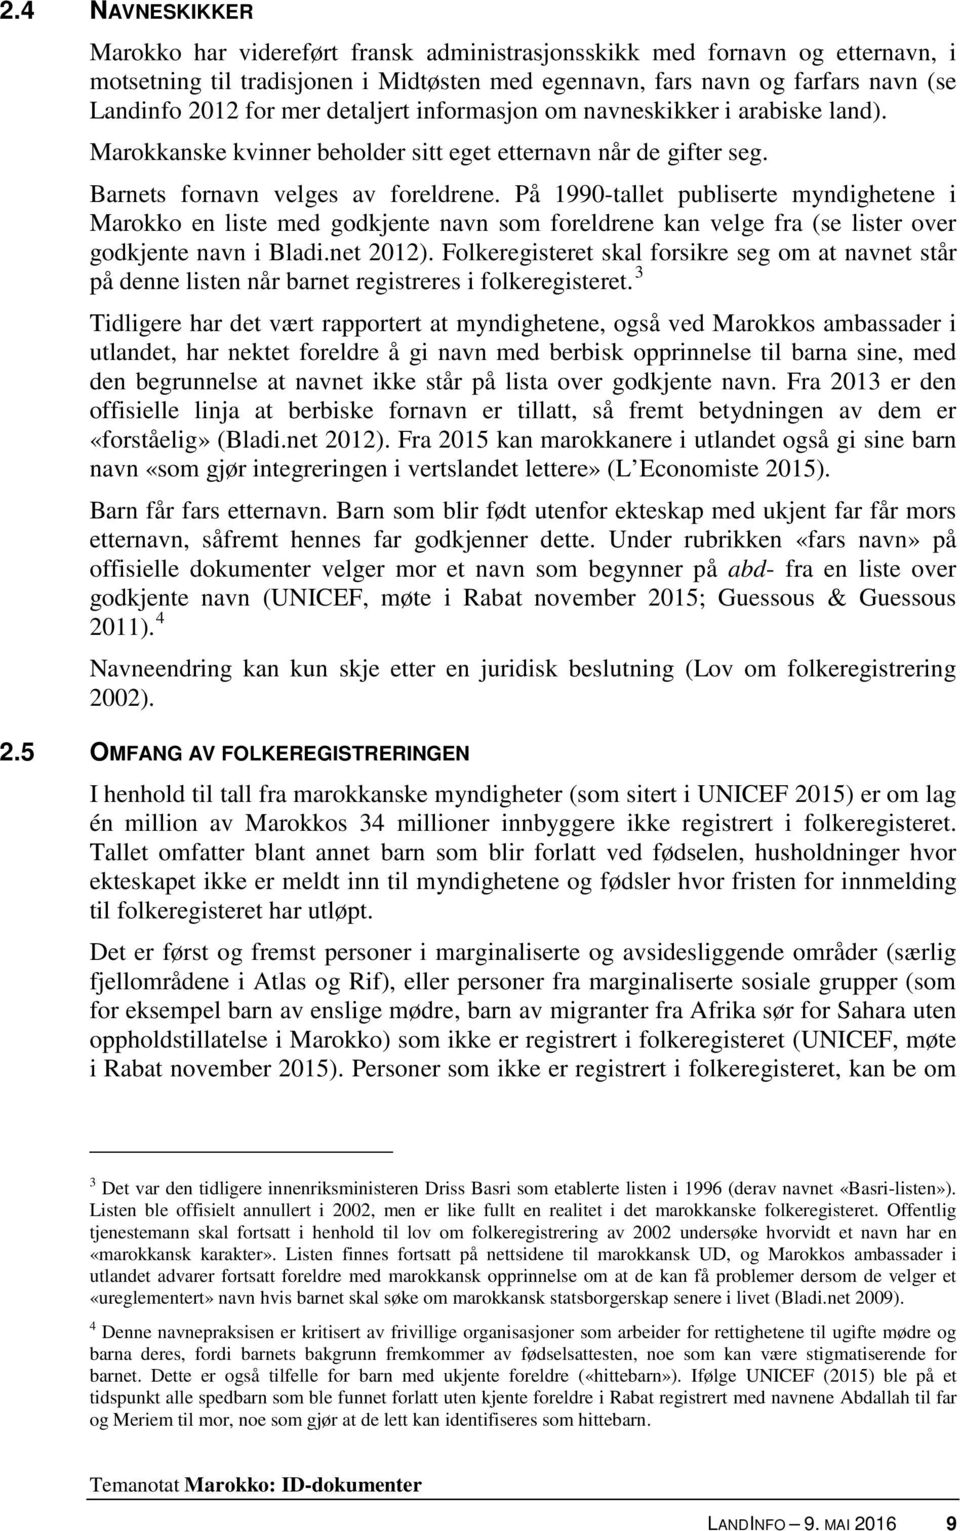 På 1990-tallet publiserte myndighetene i Marokko en liste med godkjente navn som foreldrene kan velge fra (se lister over godkjente navn i Bladi.net 2012).